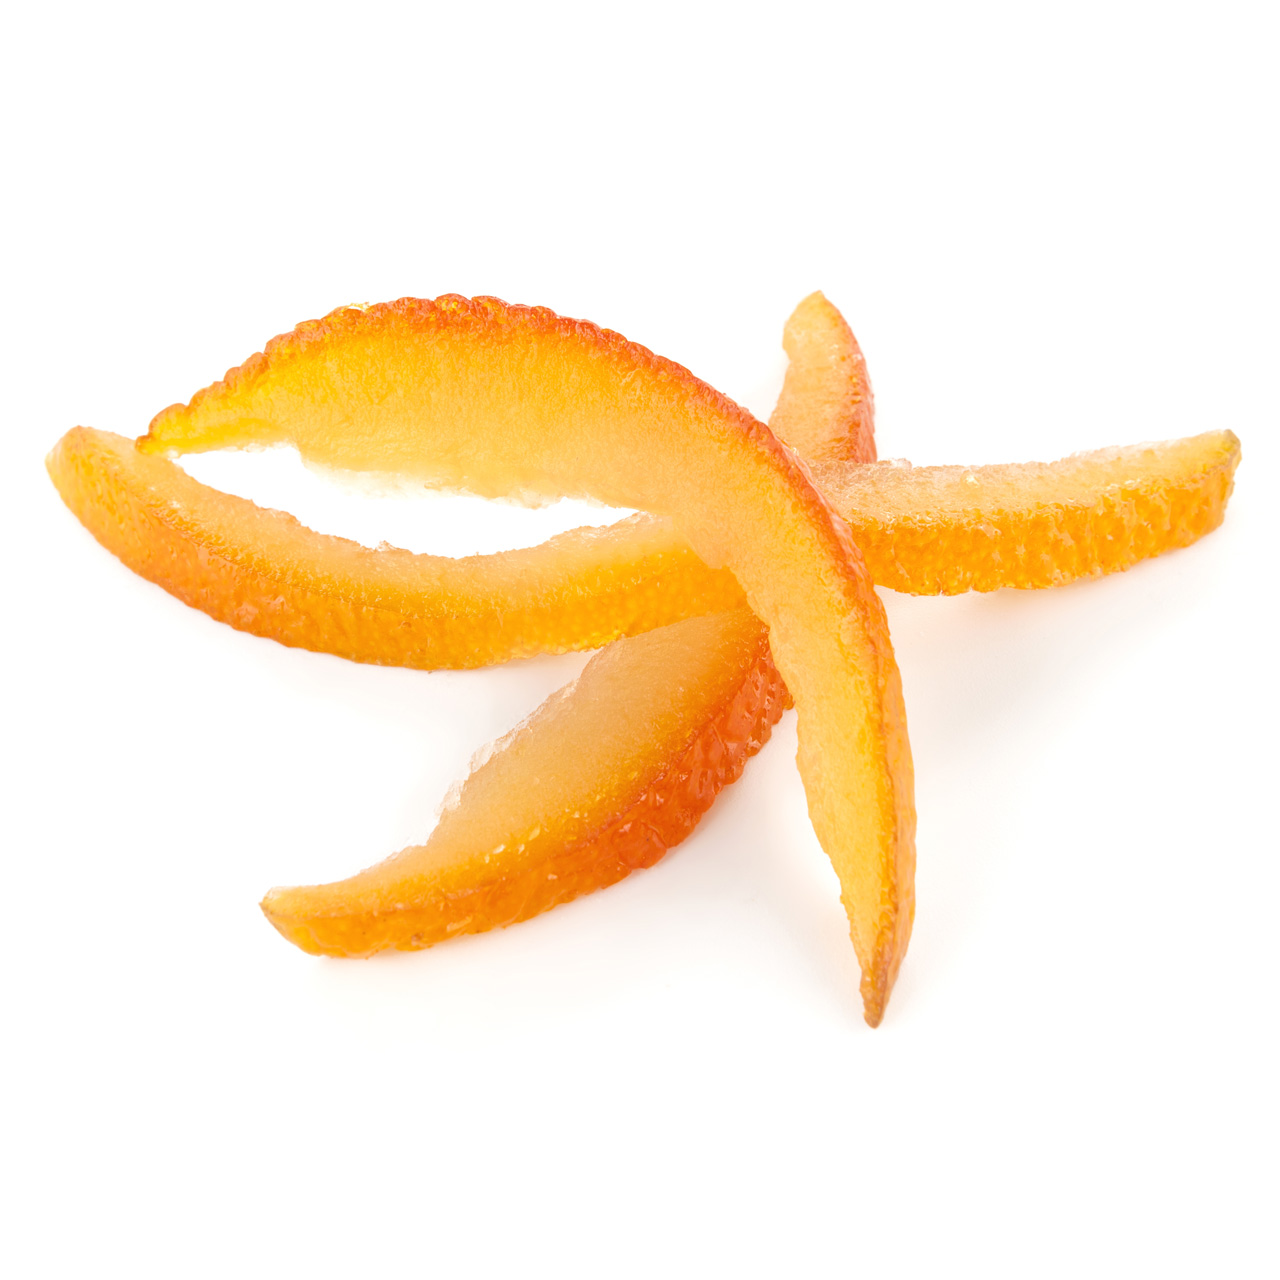 Candied orange zest